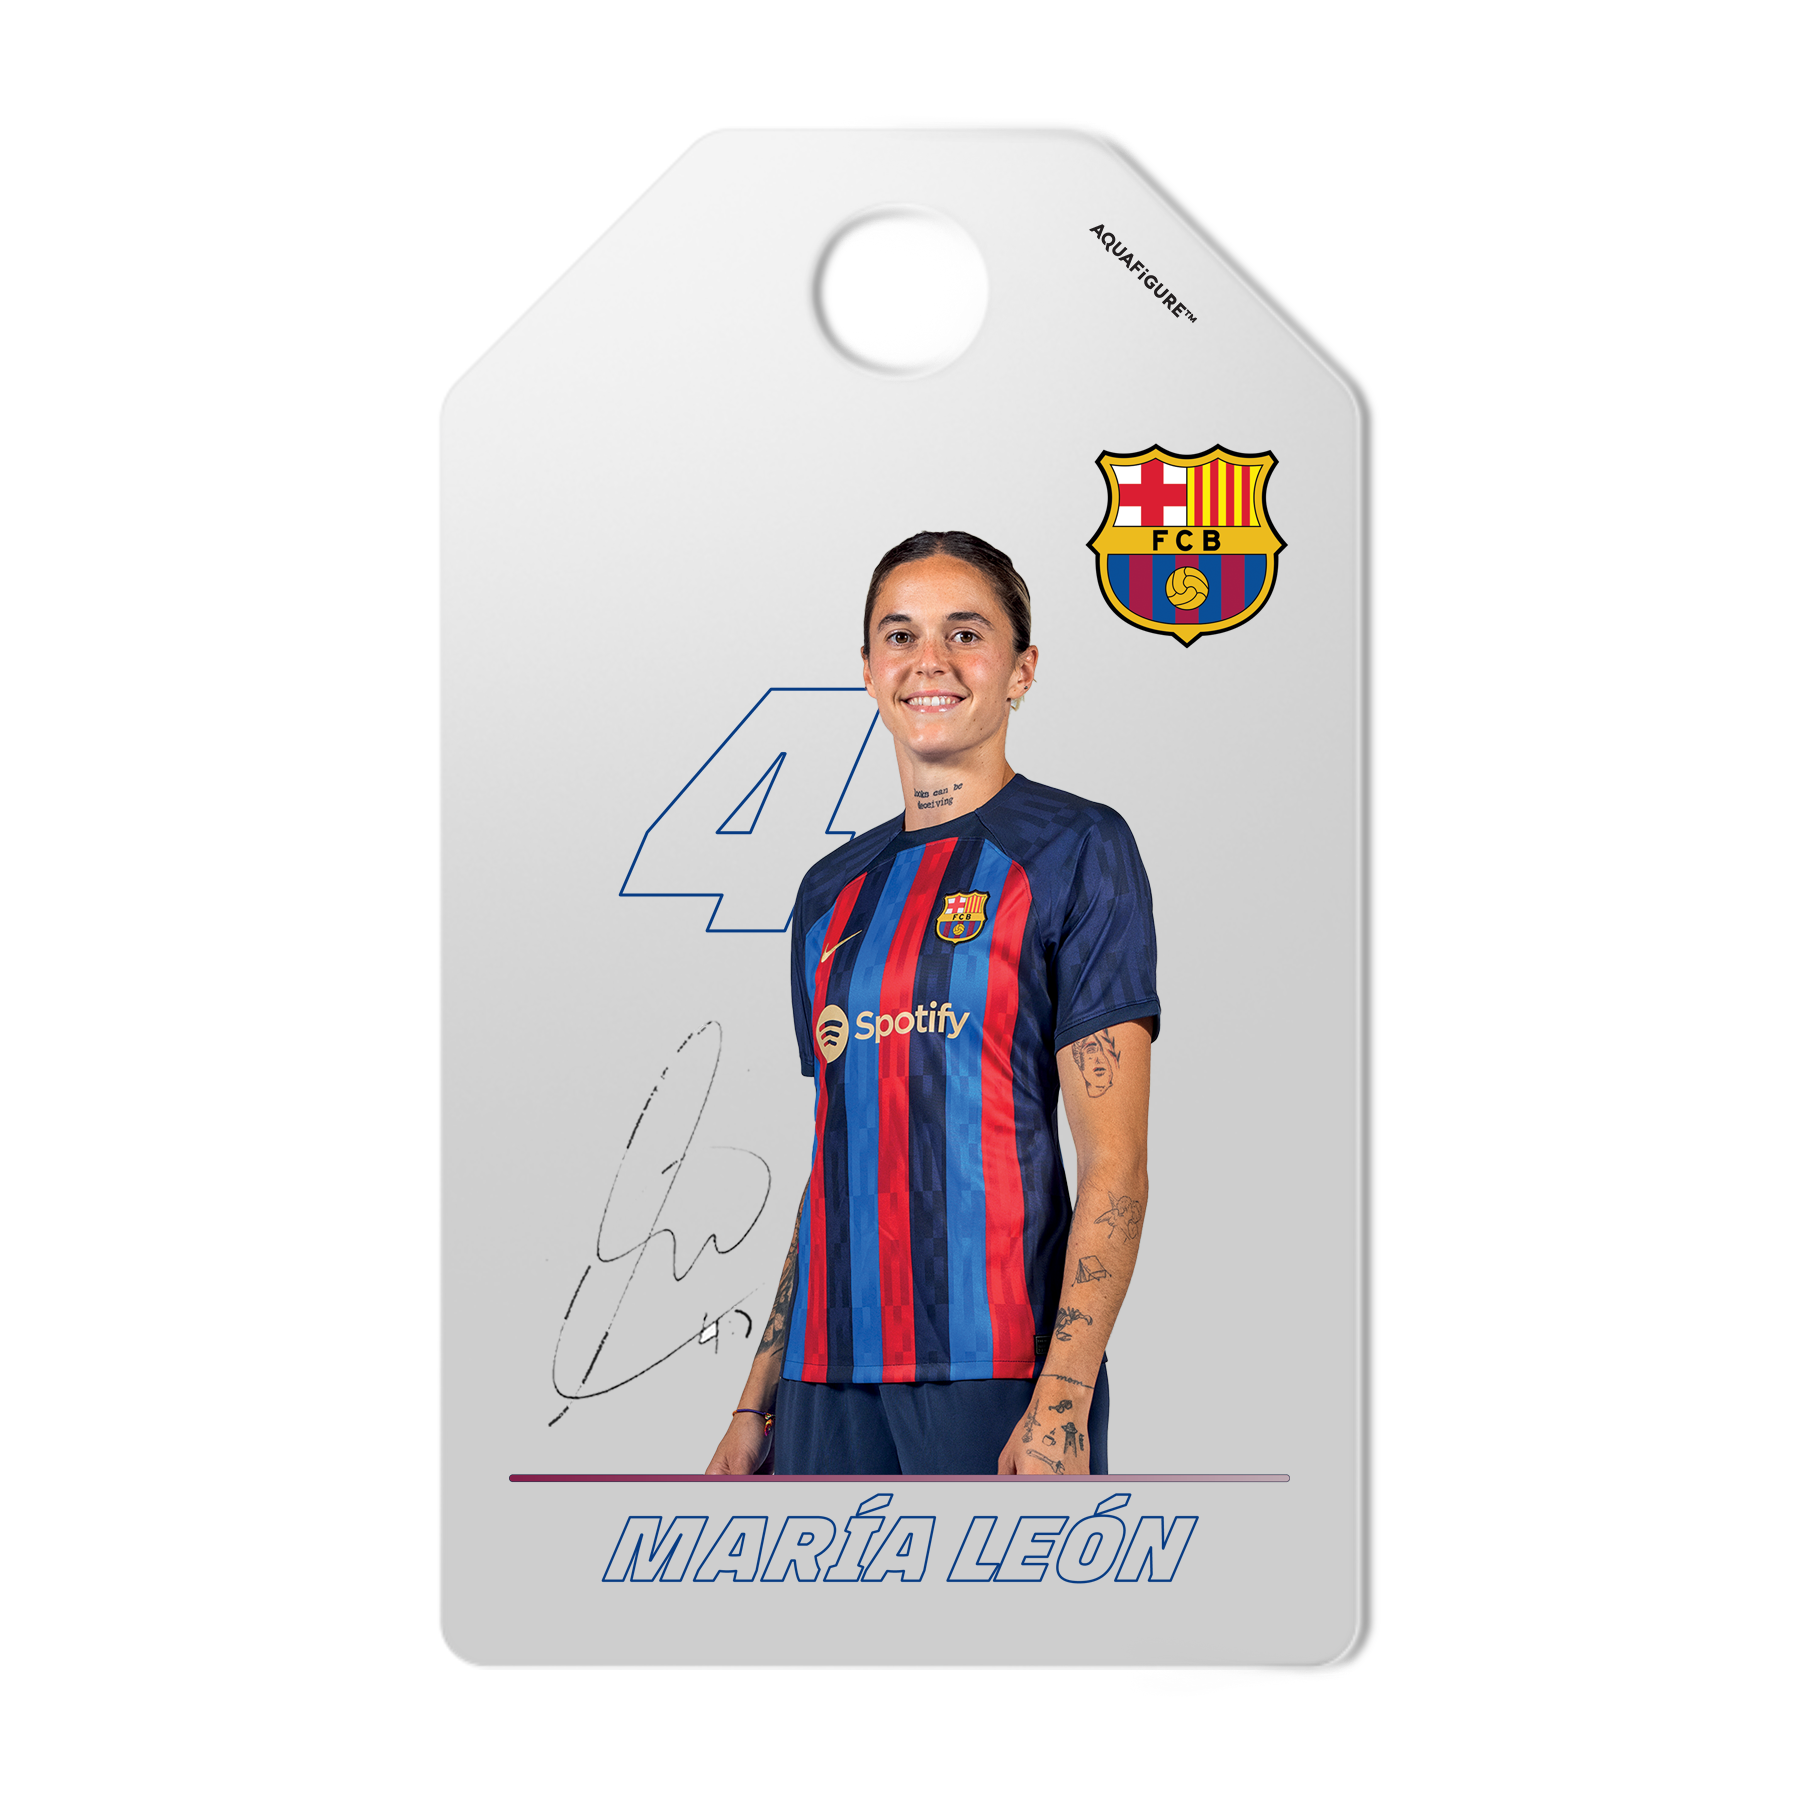 FC Barcelona kvinnelag - Aquafigure flaske inkludert klubblogo og 5 spillere